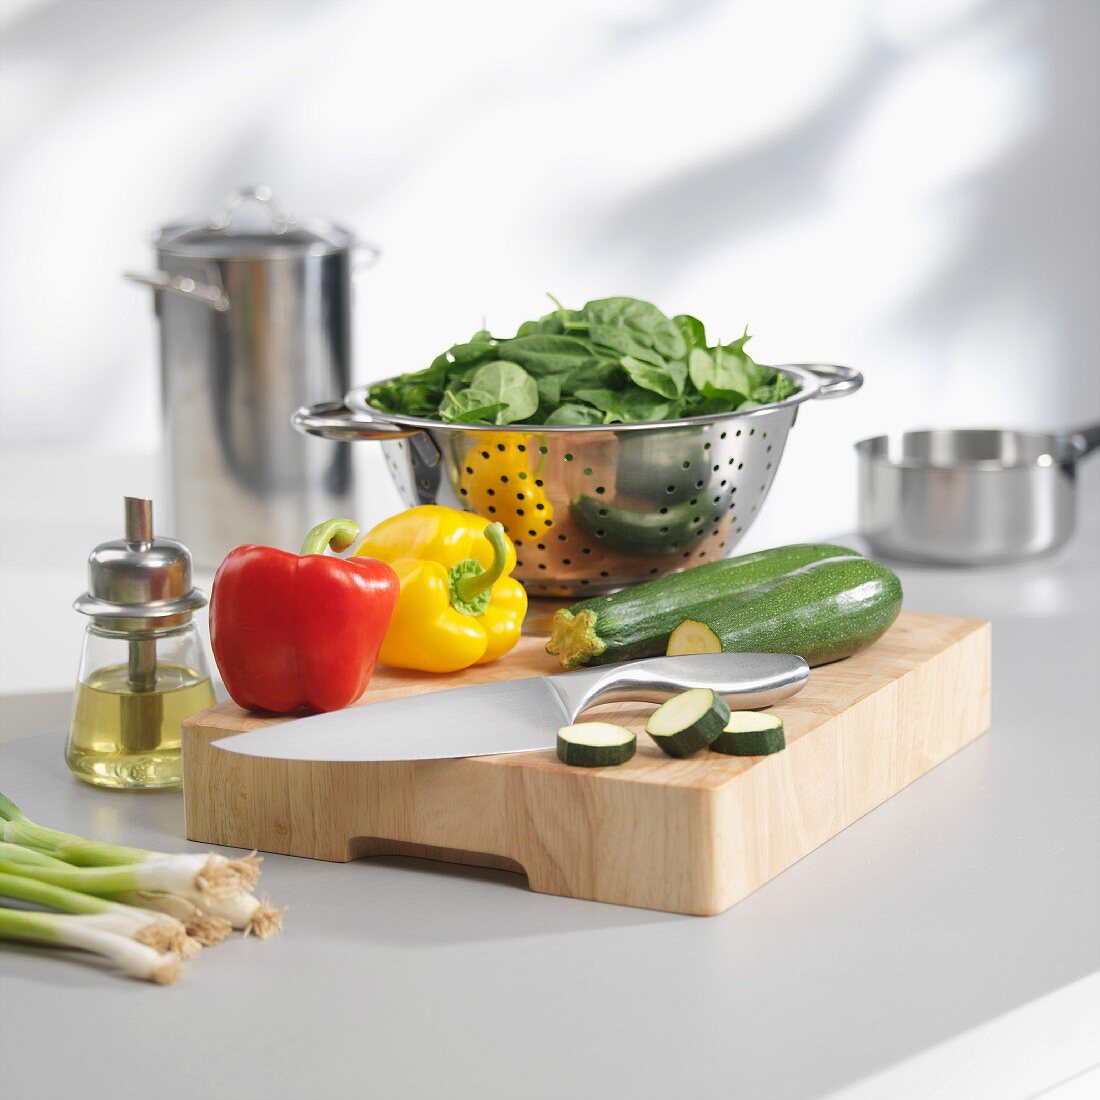 Spinat im Küchensieb und Gemüse auf Schneidebrett